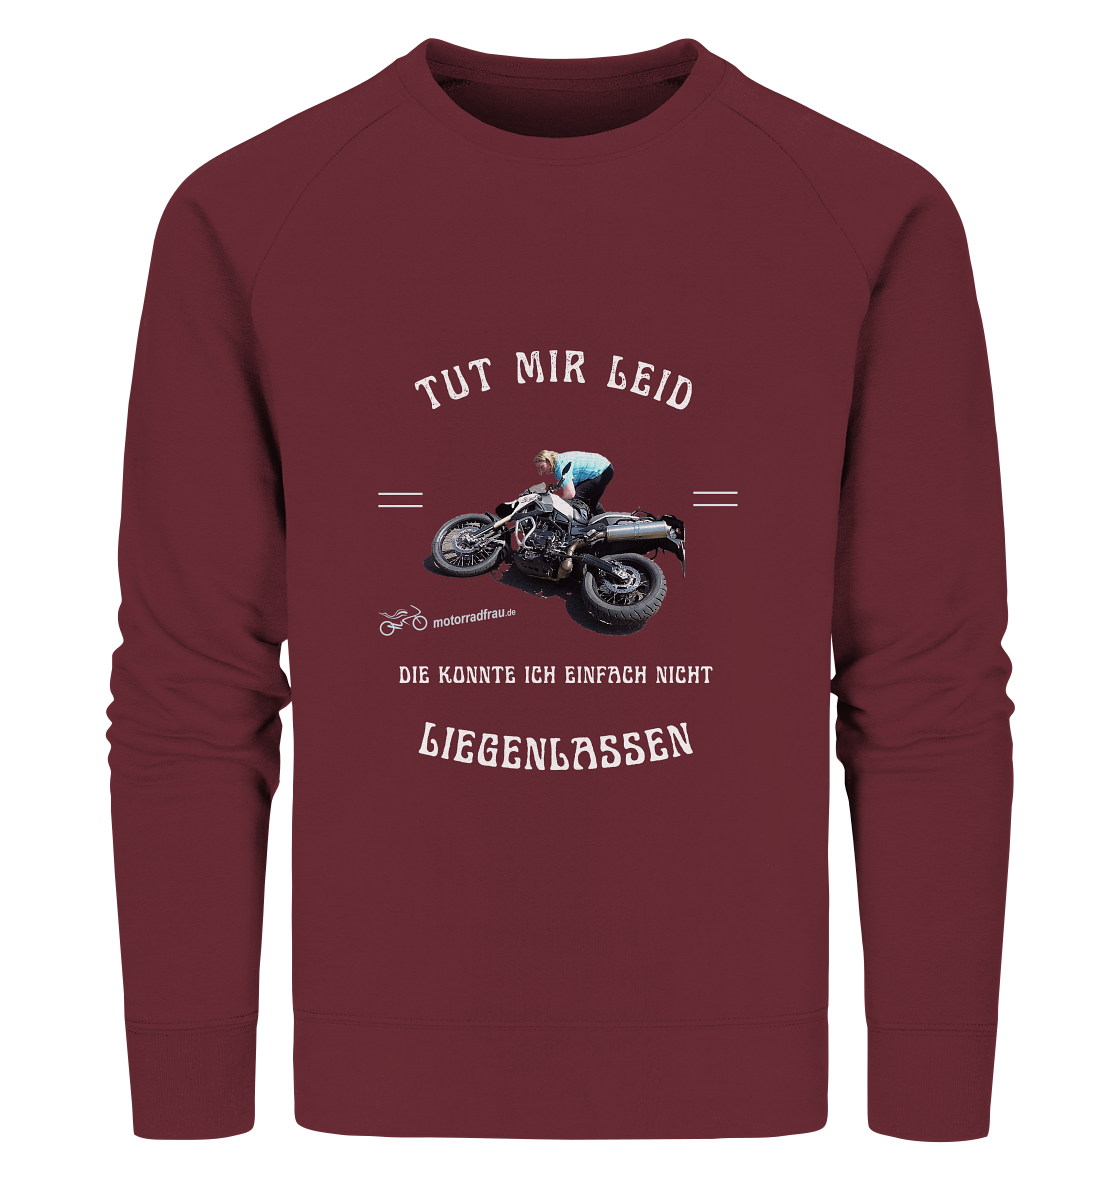 "Motorradfrau _ Tut mir leid, die konnte ich einfach nicht liegenlassen" | Sweater mit Foto und Motorrad-Spruch in hellem Design